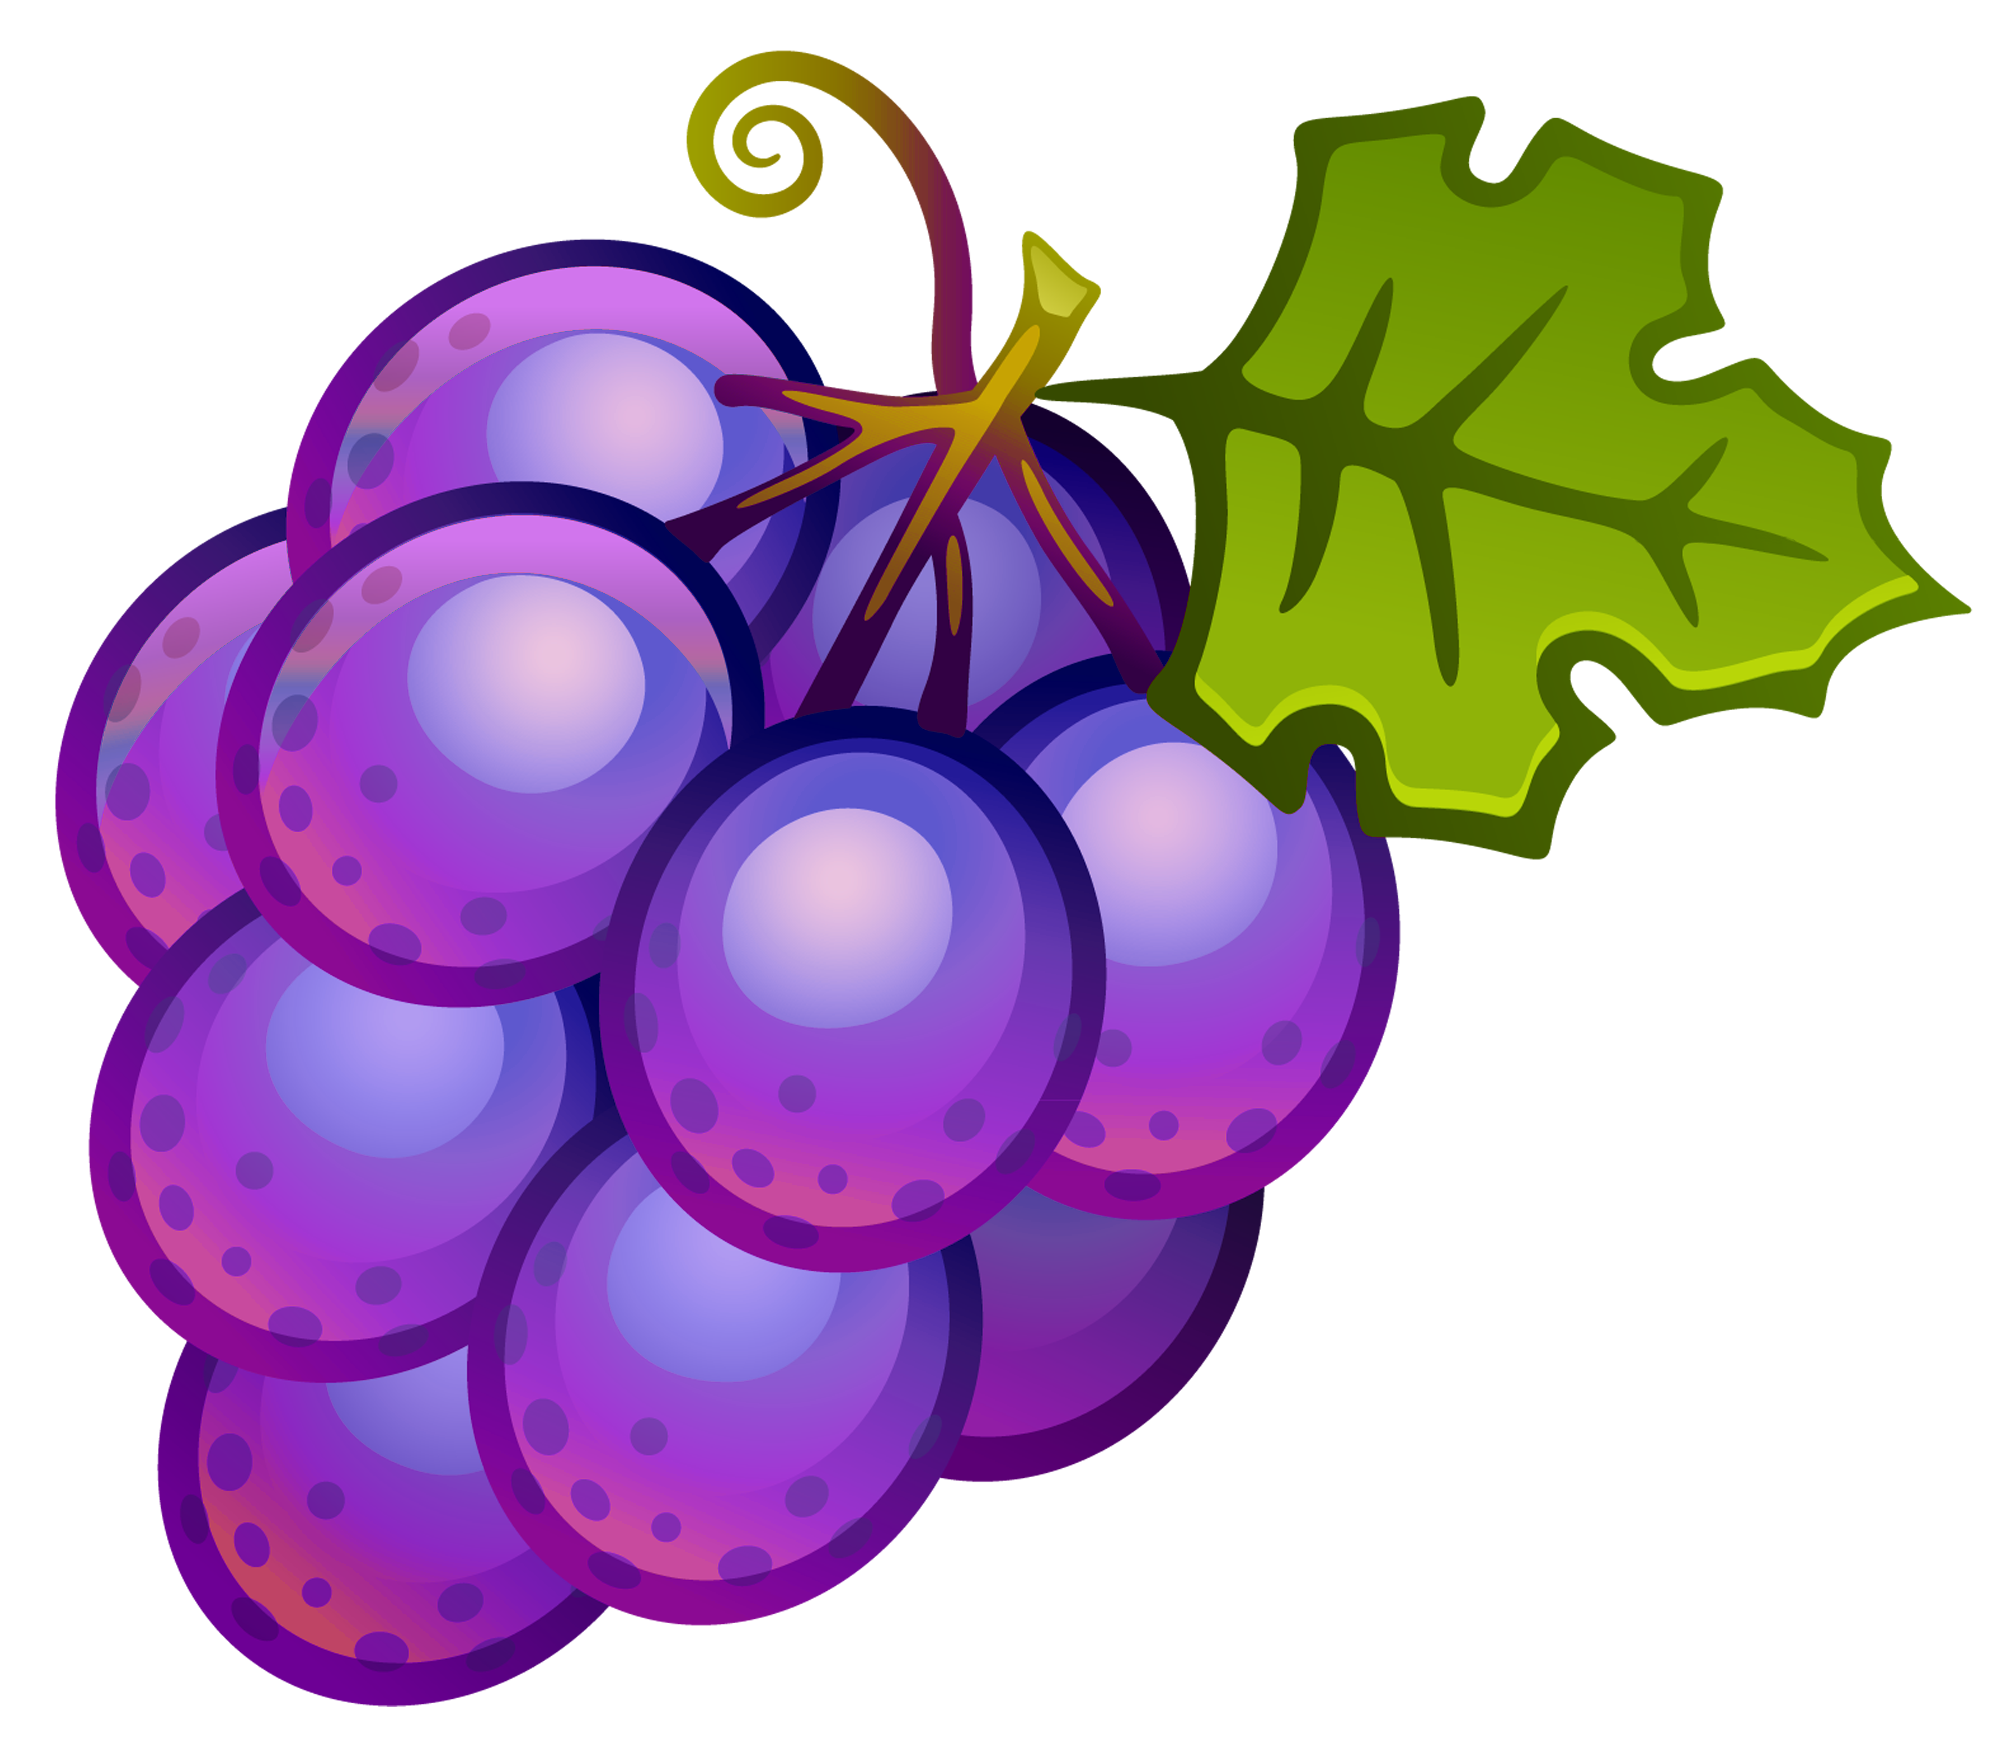 Grape Juice Clipart Clipart P